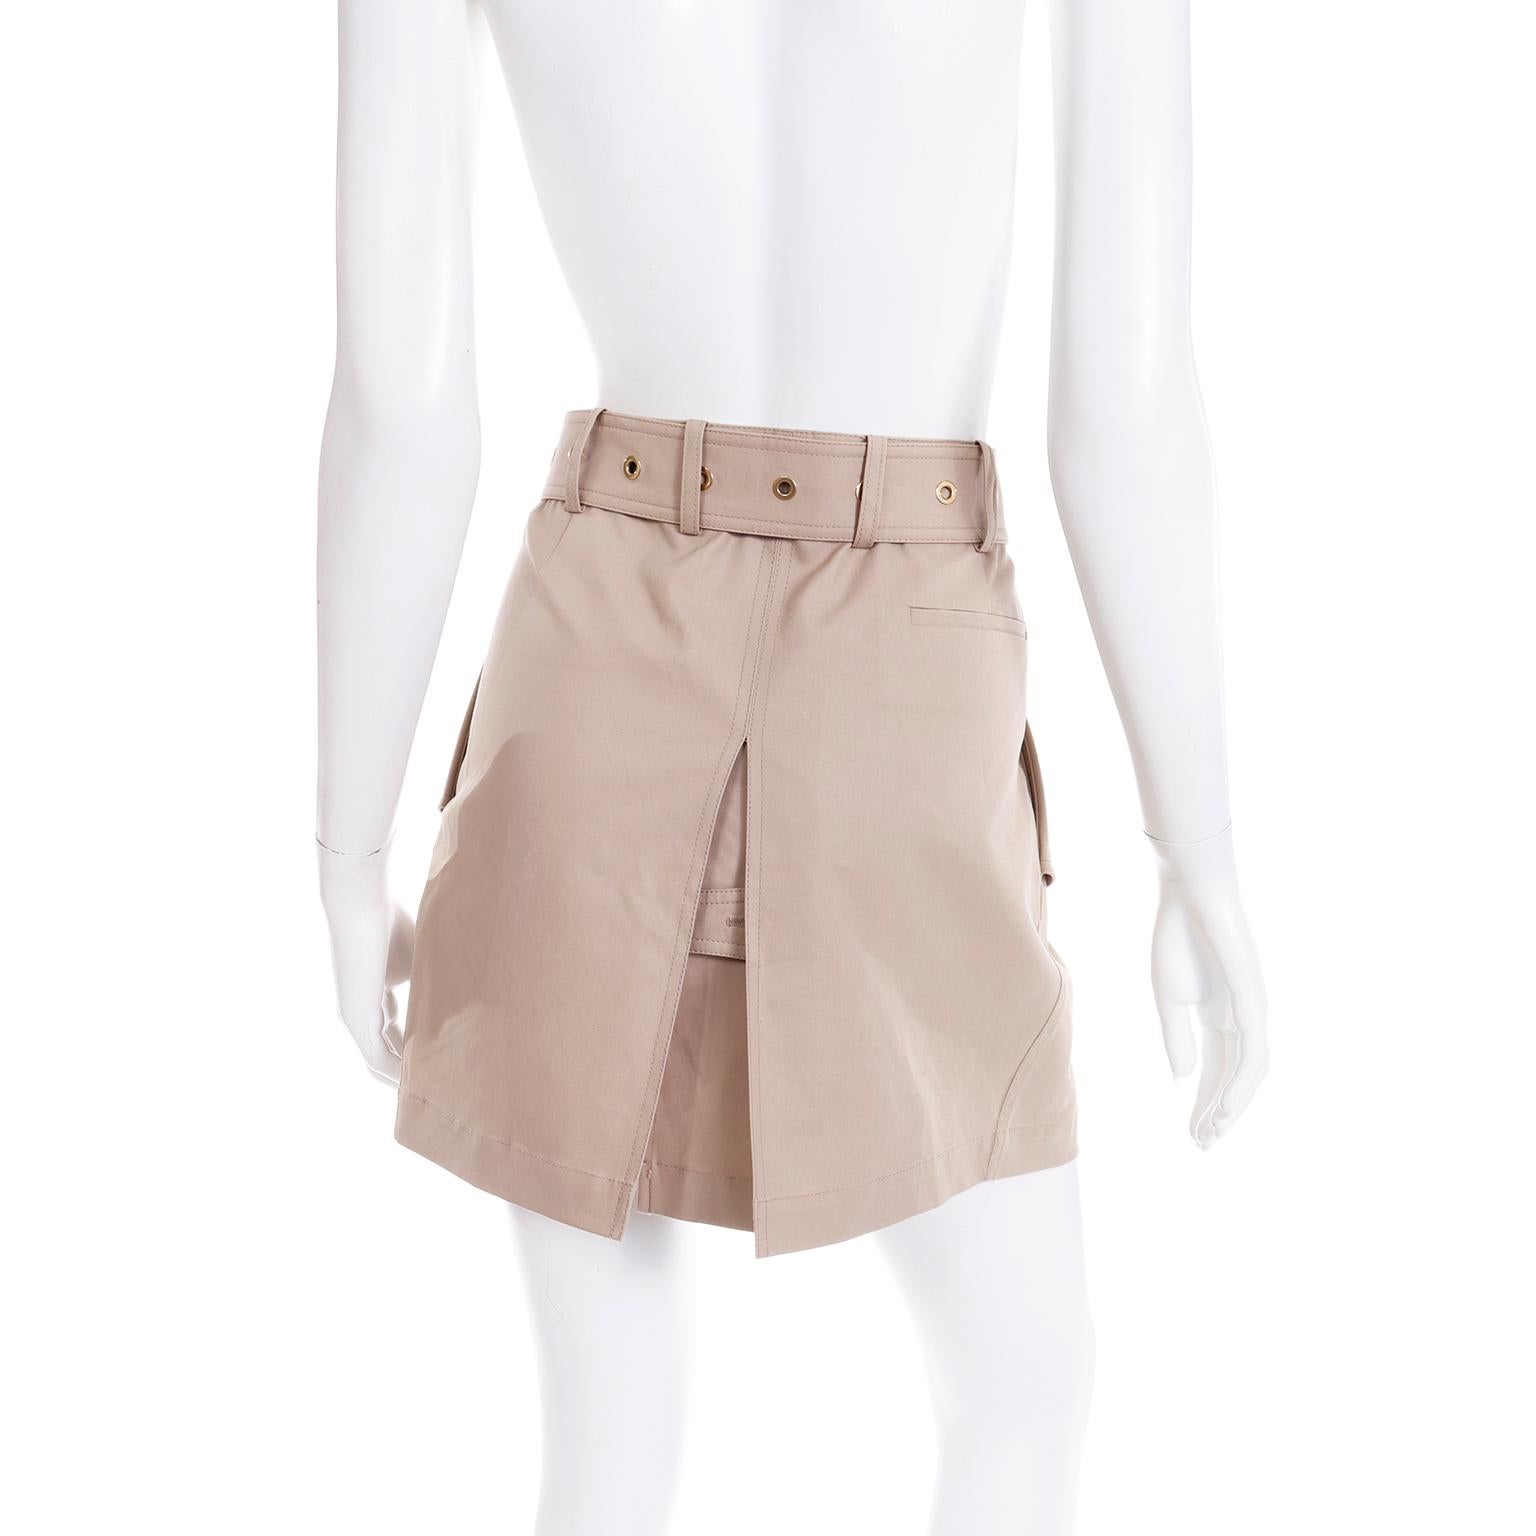 Vintage Salvatore Ferragamo Tan Jacket & Mini Skirt Suit Outfit with Belt 4